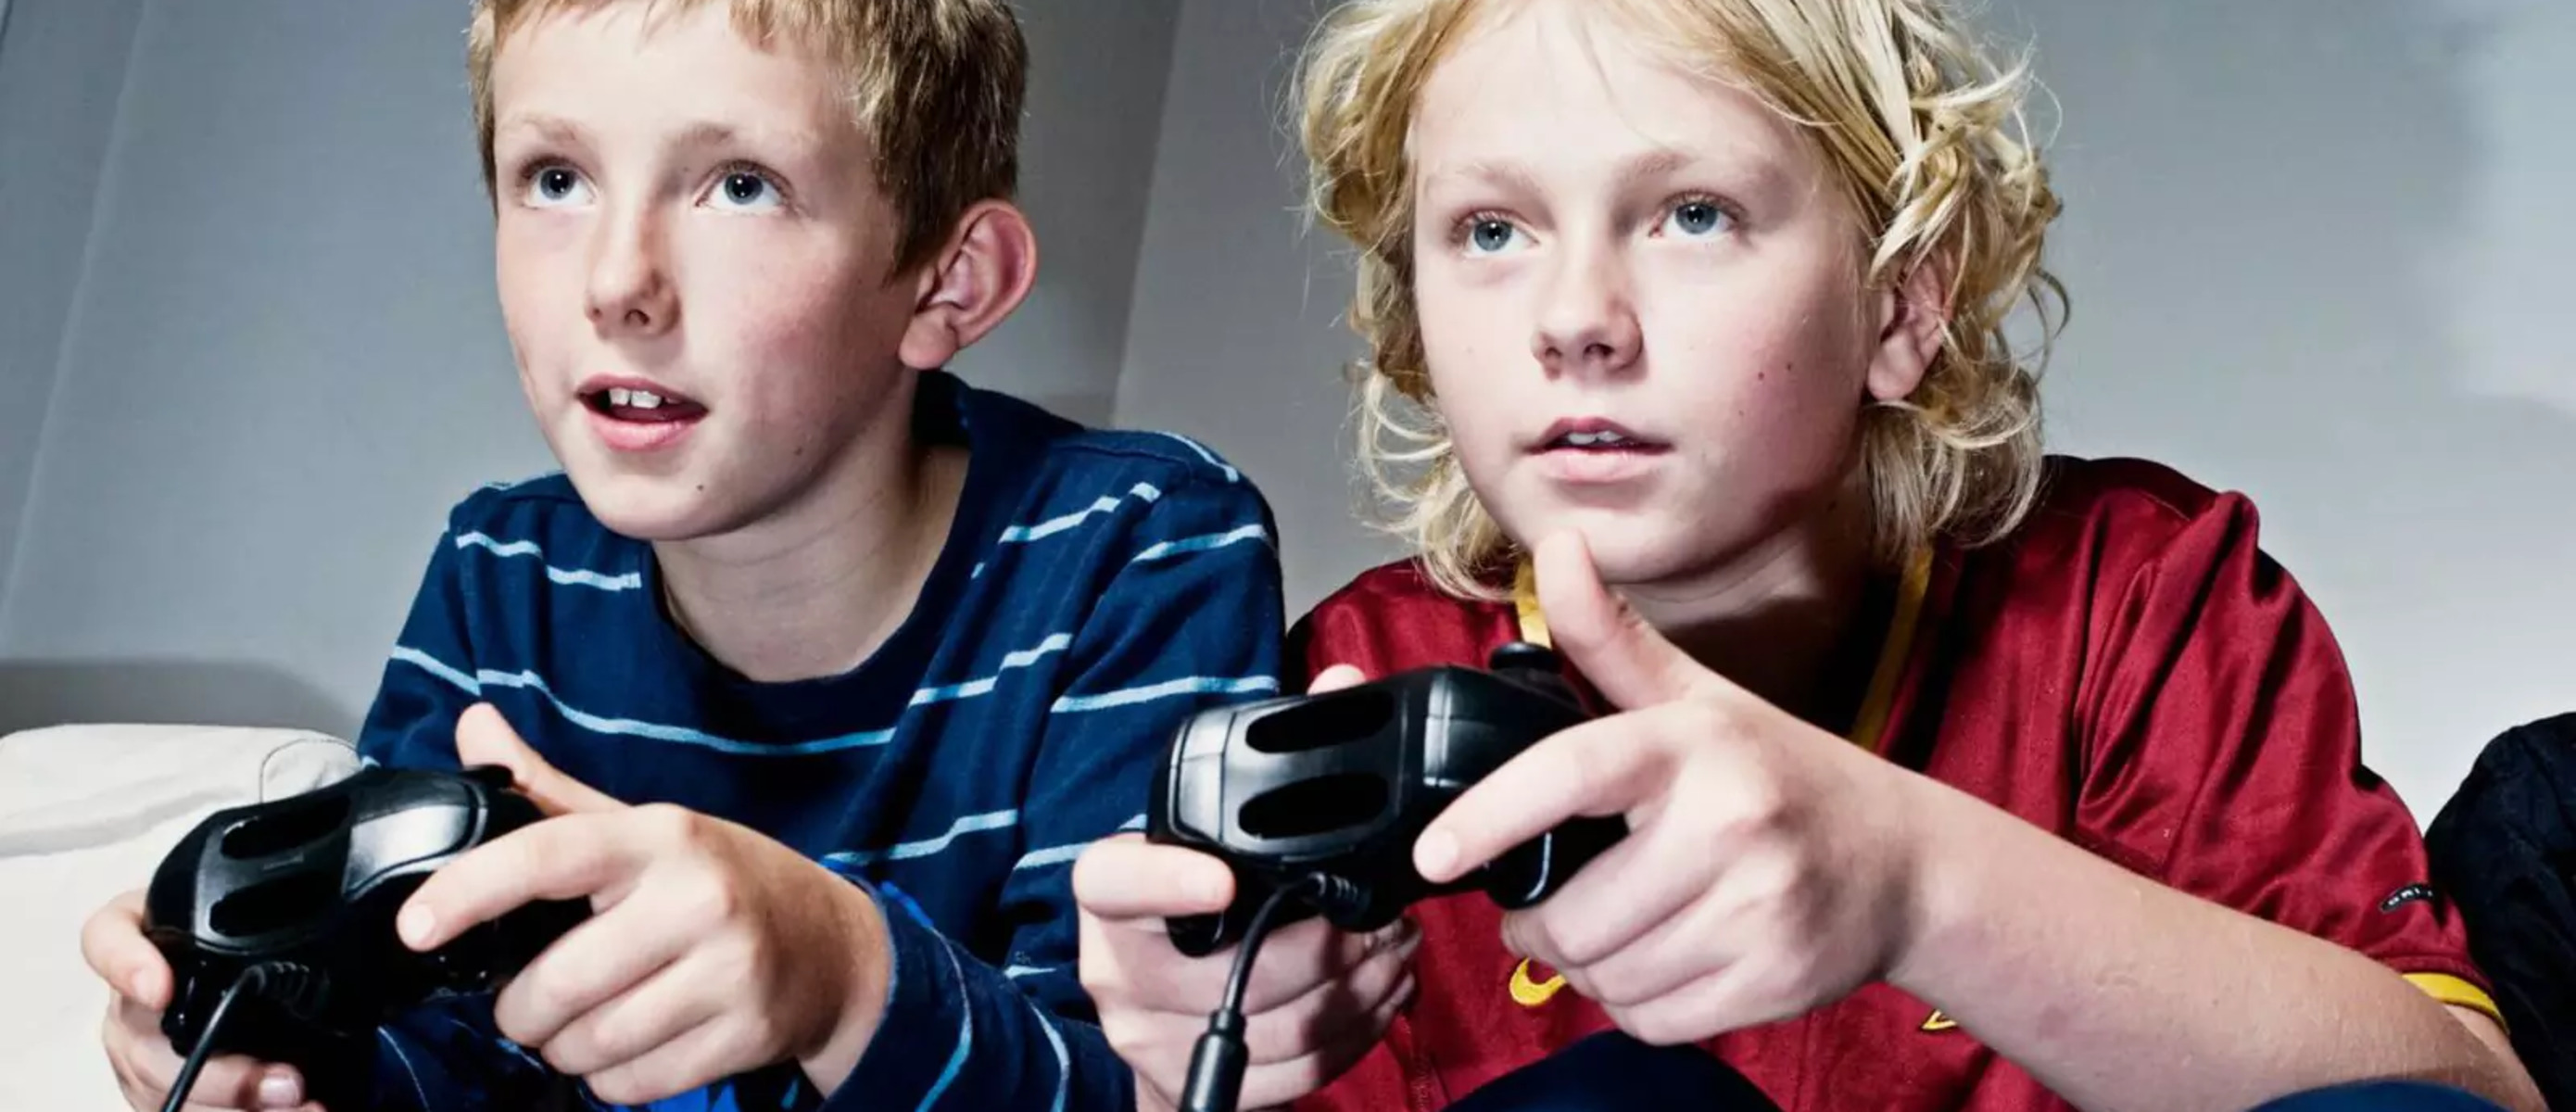 Увлеченные игрой дети не слышали как вошла. Дети играющие в компьютерные игры. Подростки играющие в компьютерные игры. Ребенок играющий в компьютерную игру. Увлечения подростков.